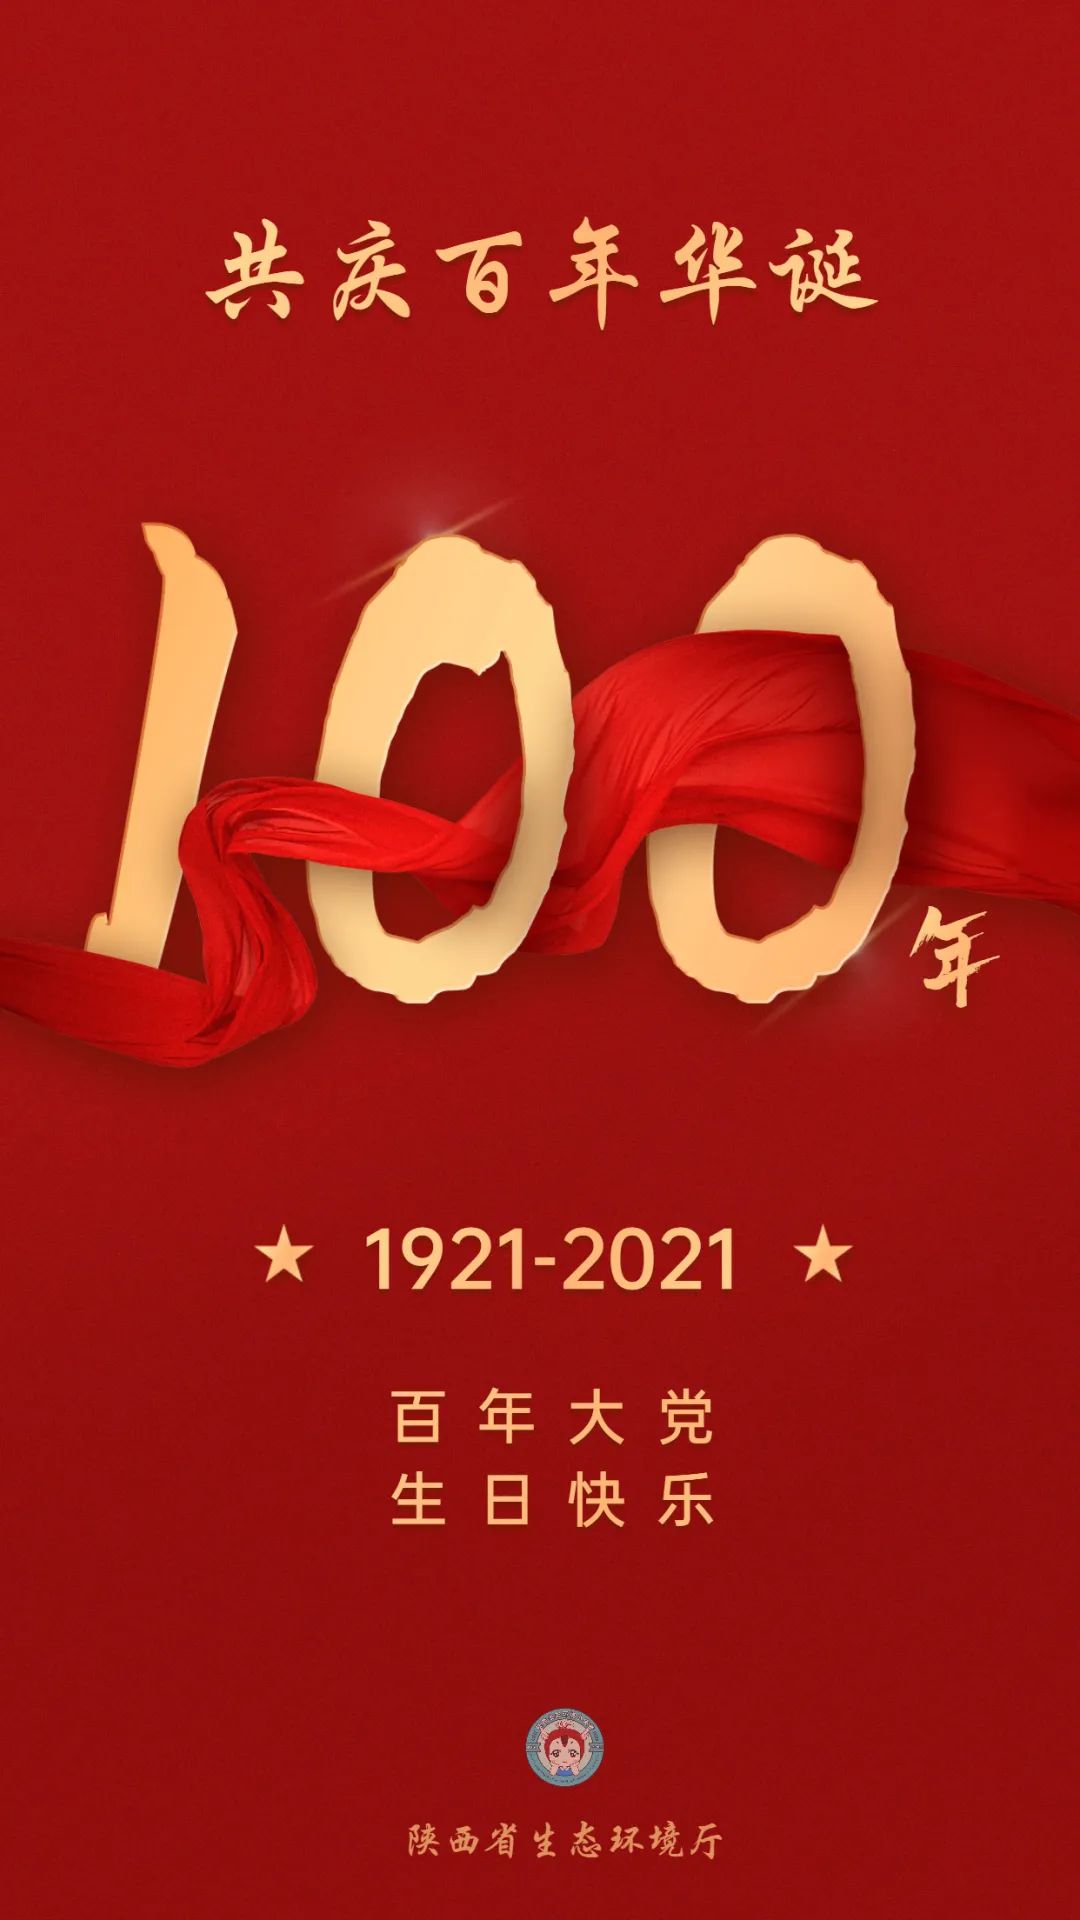 共庆百年华诞丨中国共产党100岁生日快乐!